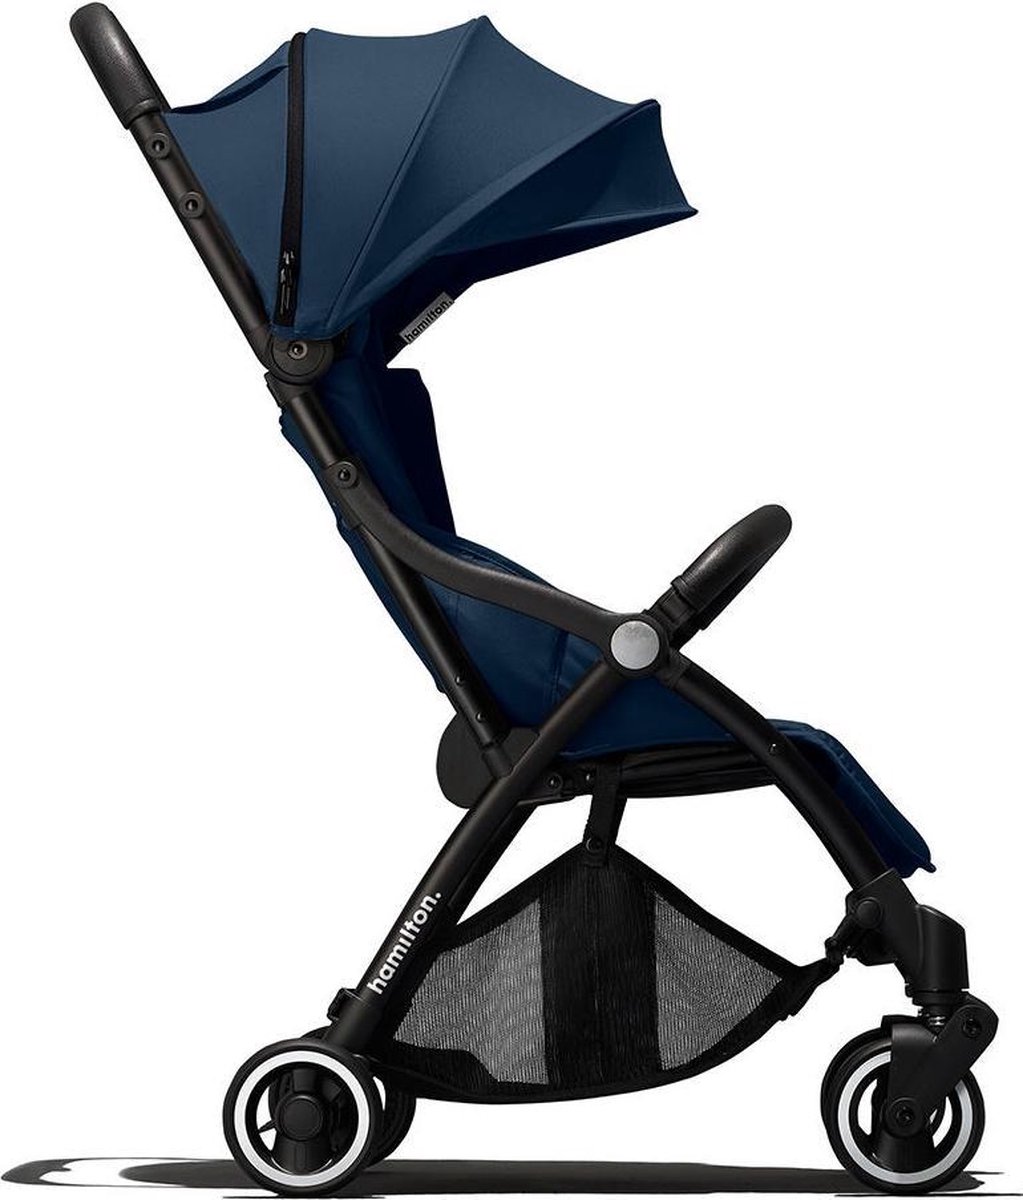 Hamilton by Yoop One Prime X1 Buggy – Premium Stroller met MagicFold Technologie – Blauw – Lichte en Wendbare Kinderwagen met Extra Features